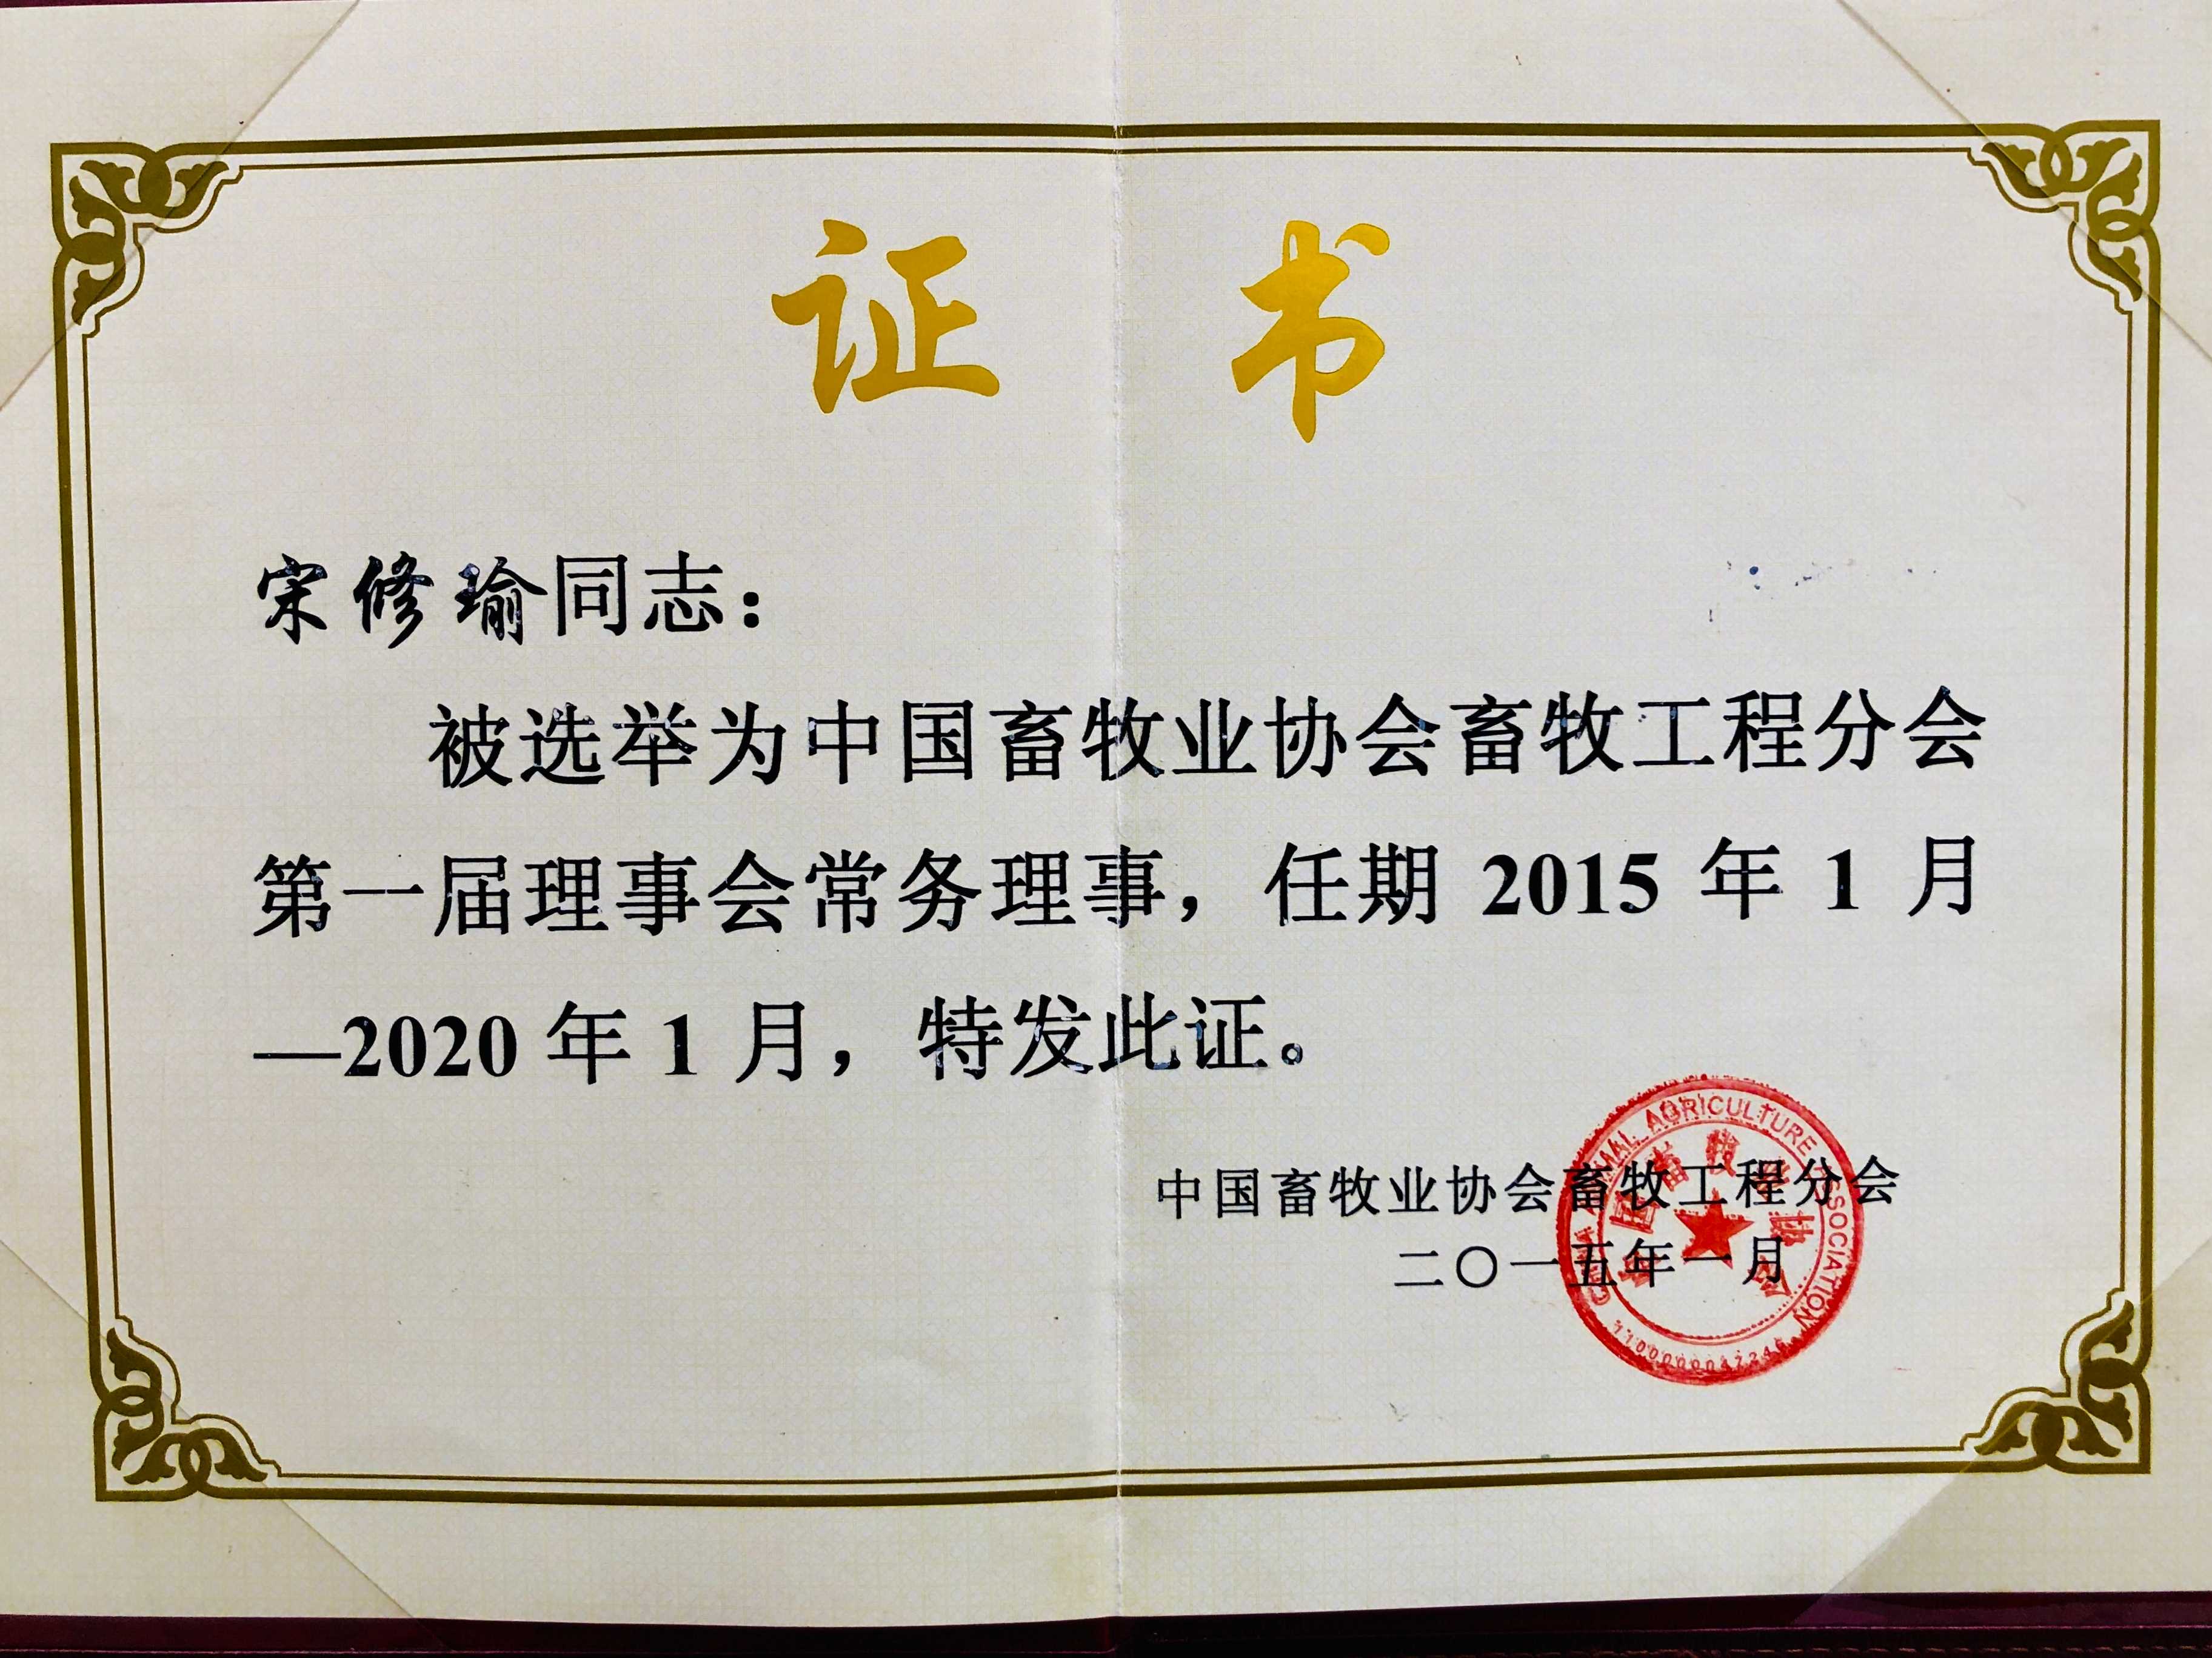 选举为中国畜牧业协会畜牧工程分会第一届理事会常务理事